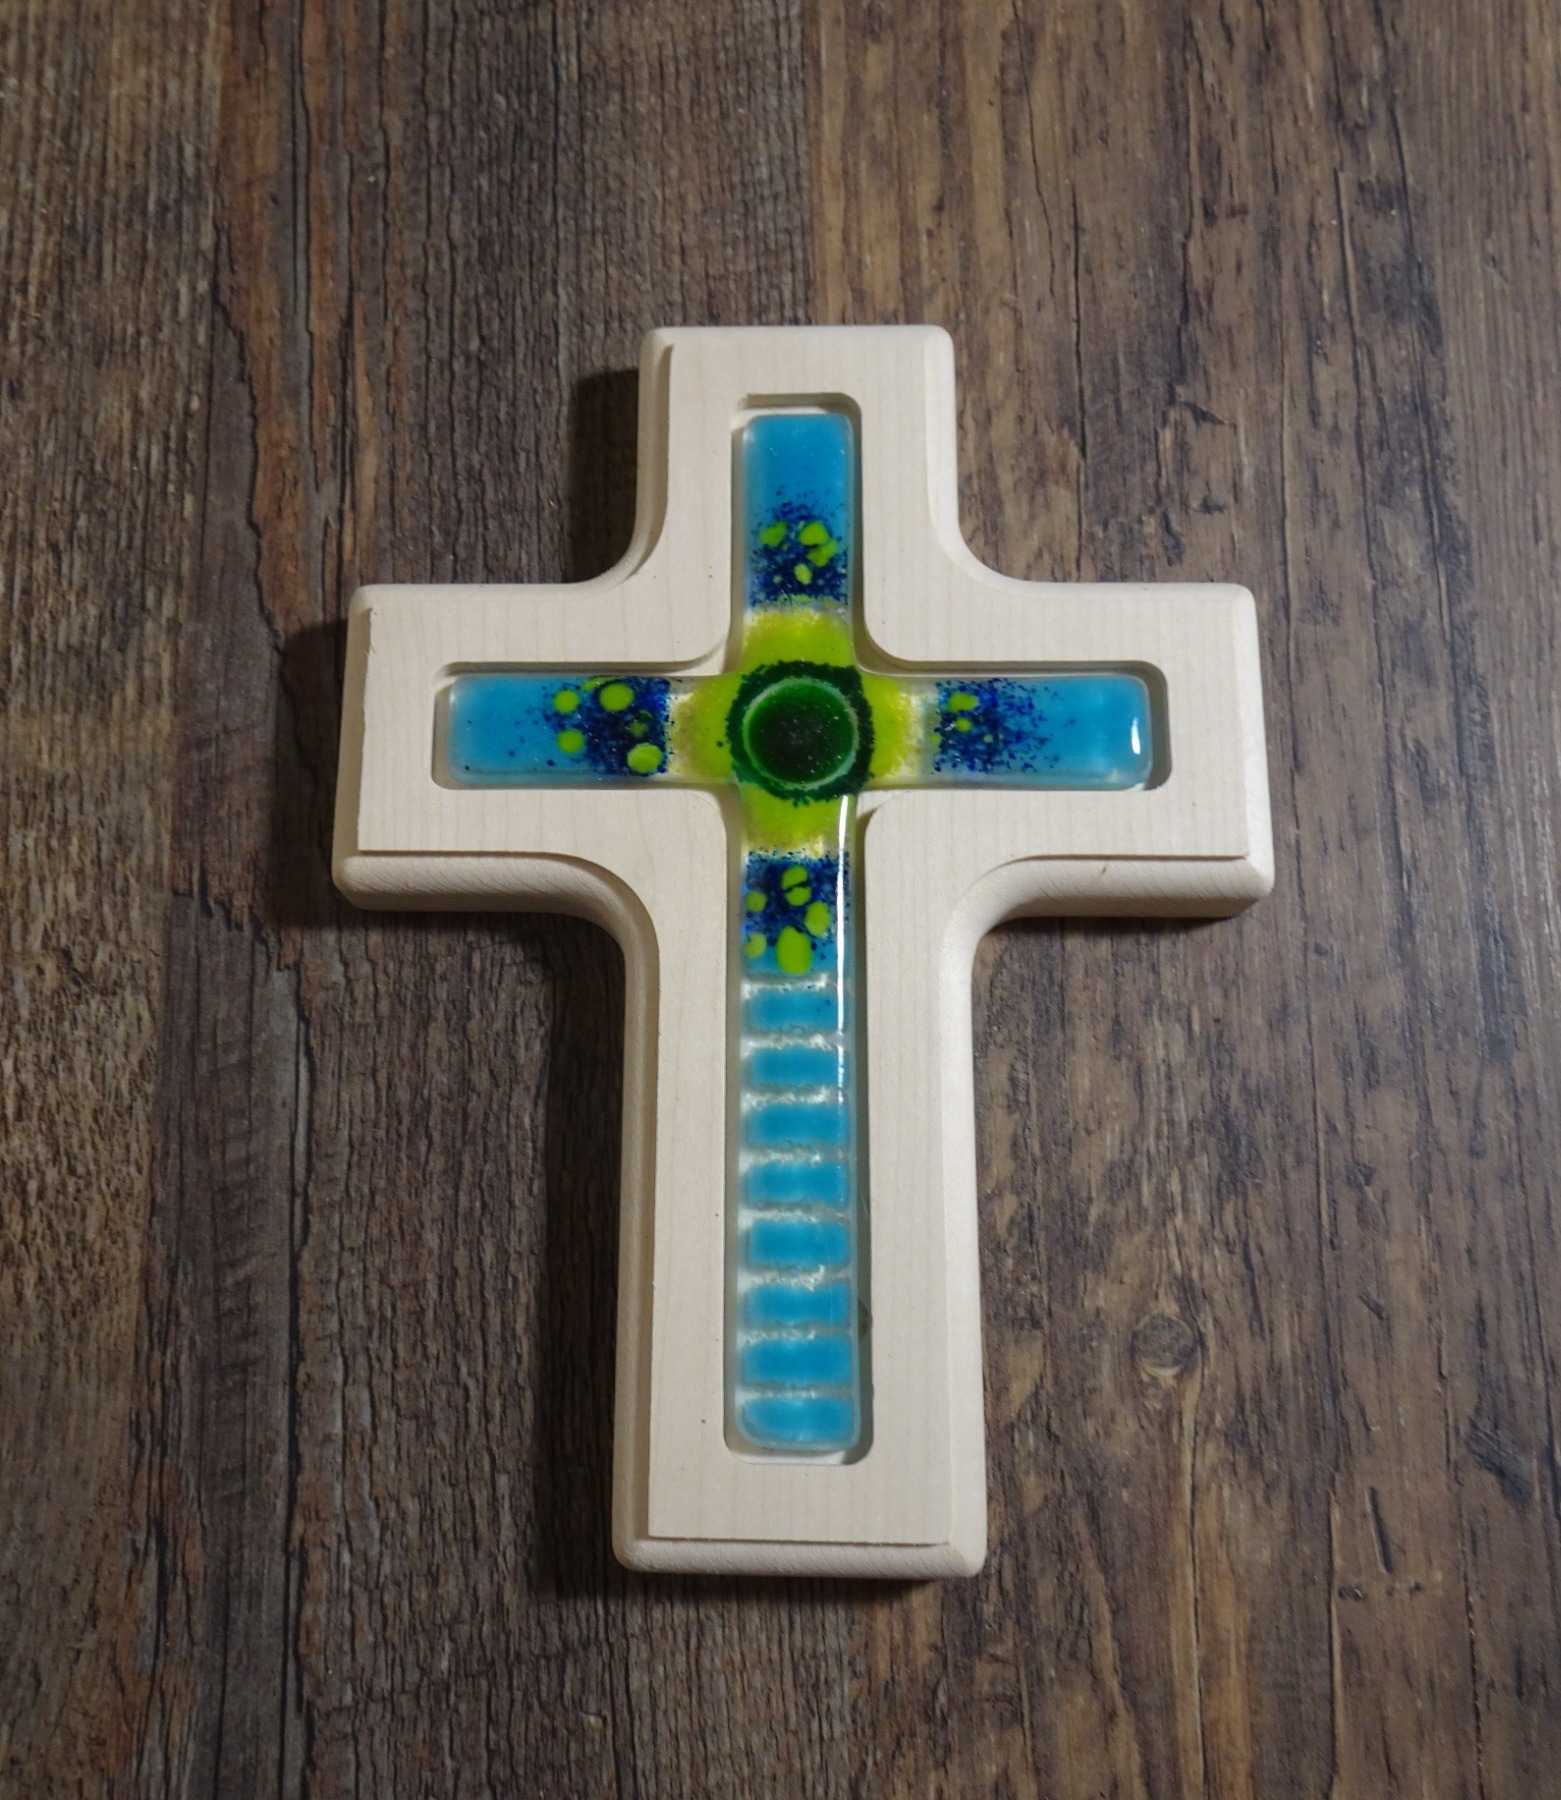 Holzkreuz mit Fusingglas in blau und grün, Kreuz aus Ahorn 4